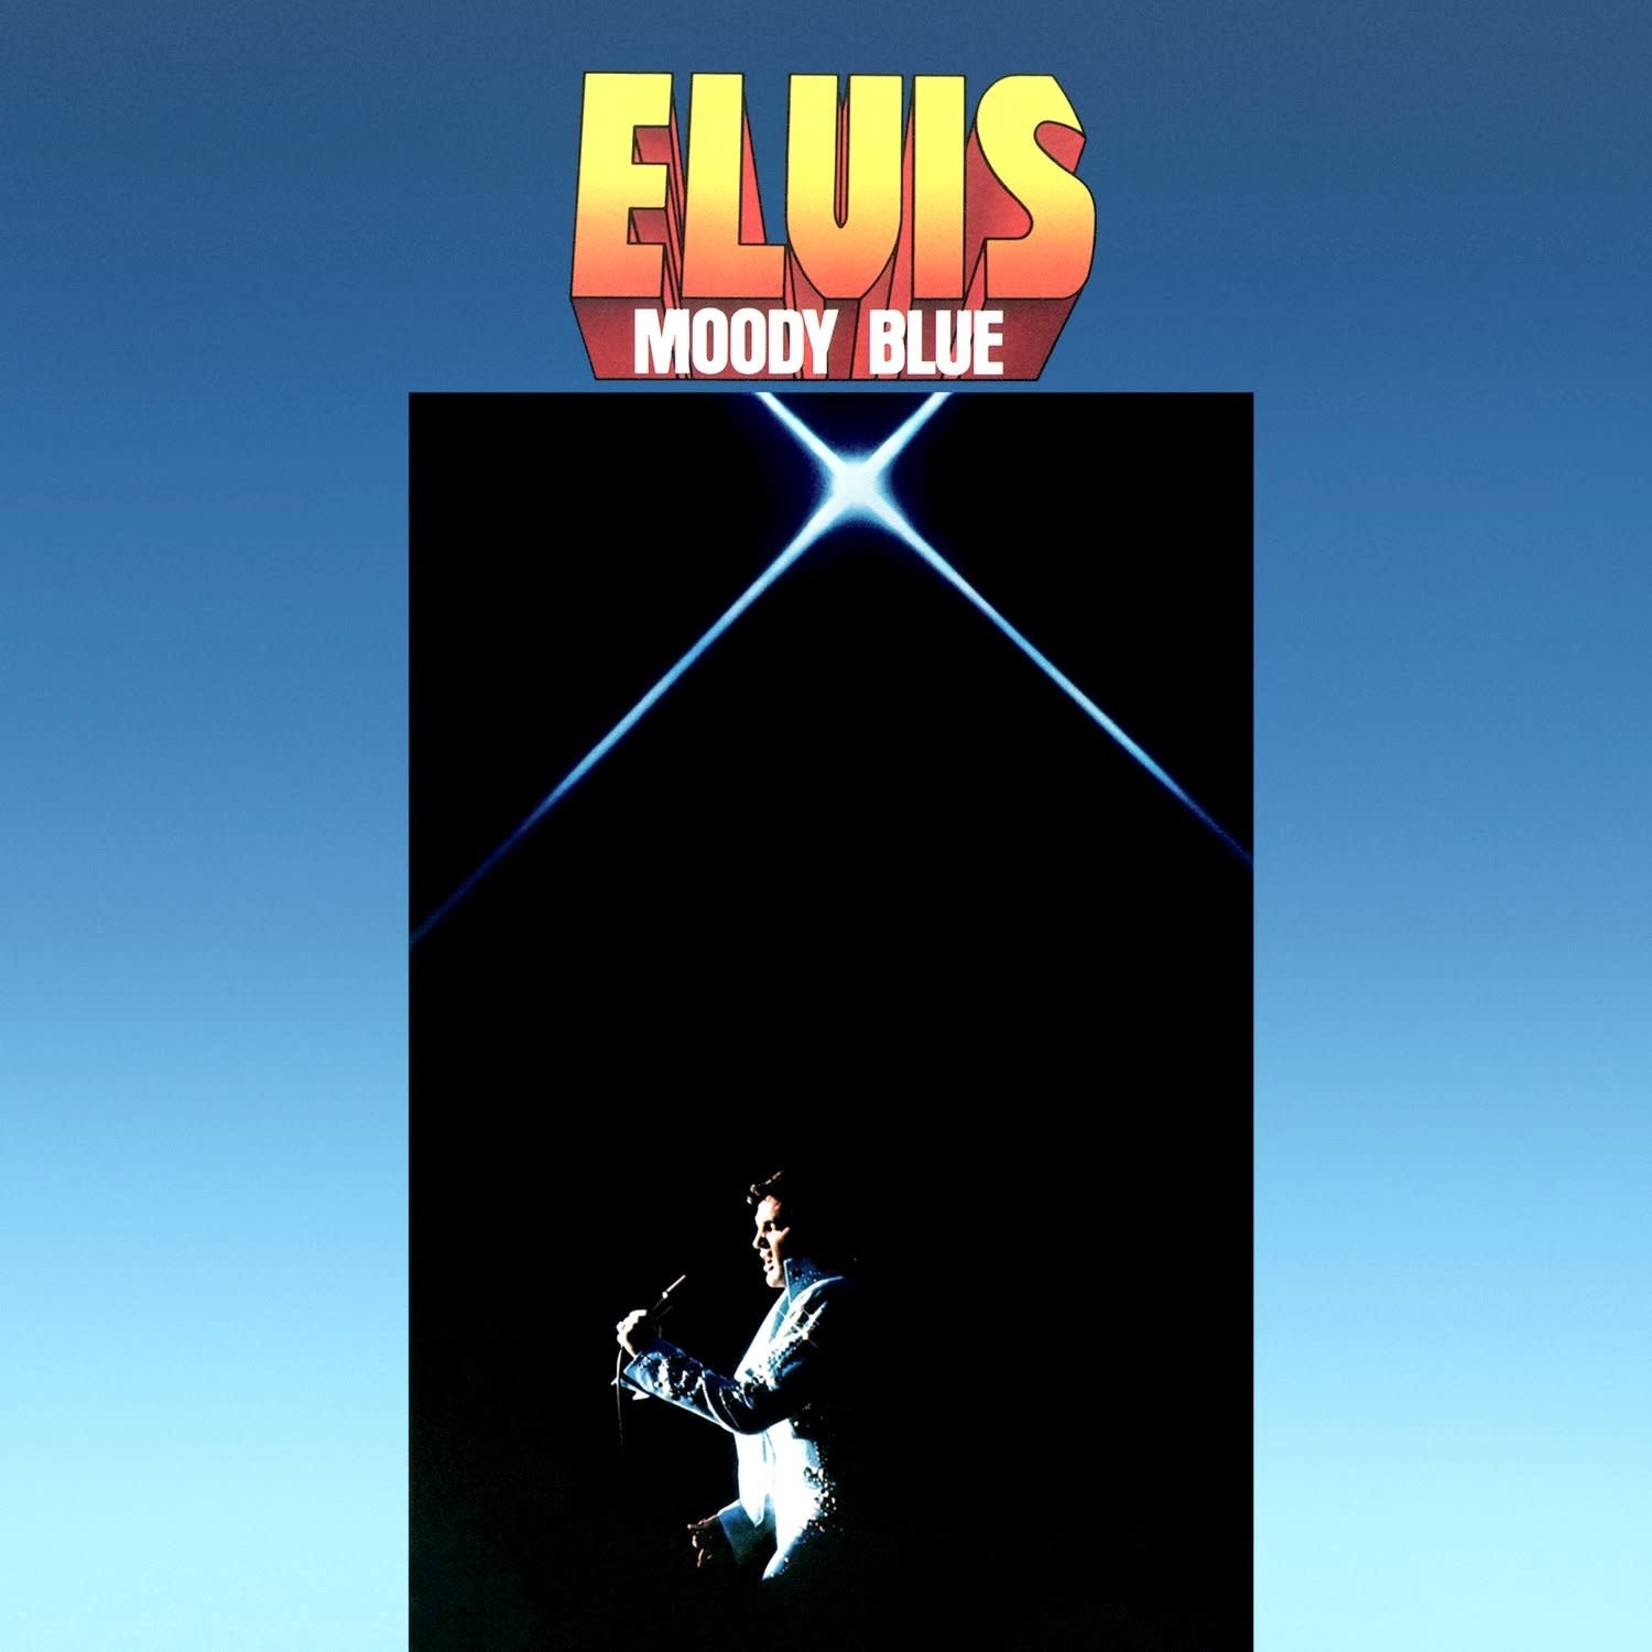 [Vintage] Elvis Presley - Moody Blue